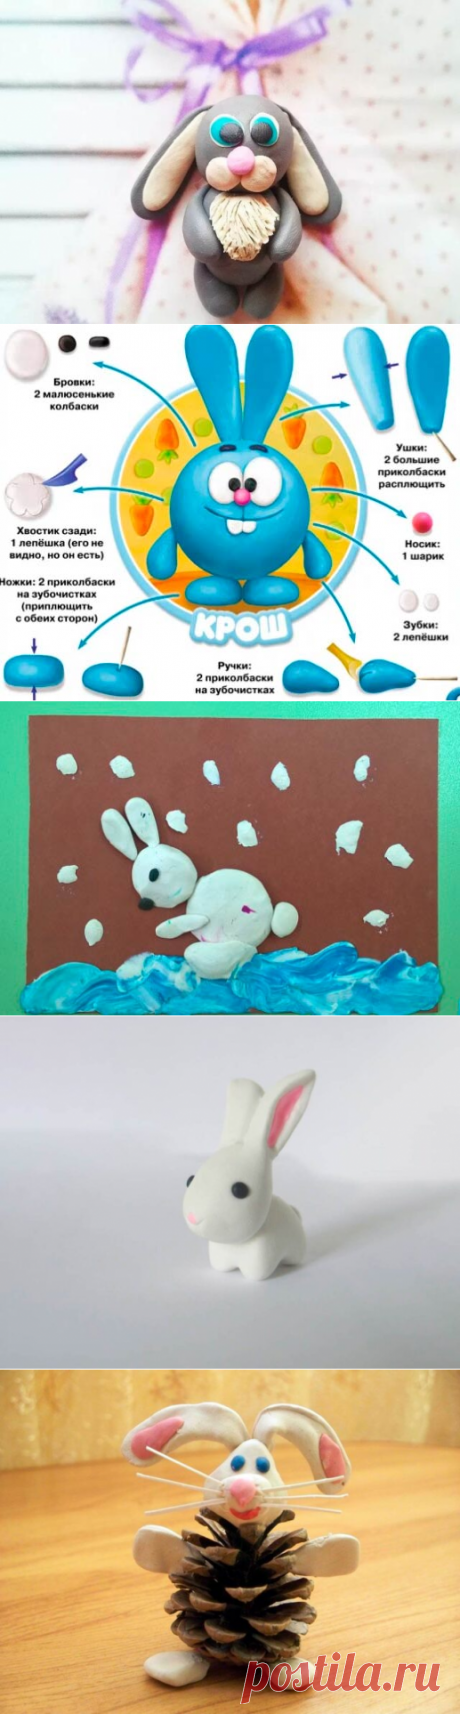 Зайчик из пластилина: как слепить пластилинового зайца для детей и сделать поделки своими руками, заяц из ну погоди лепим с детьми поэтапно - схемы фигурка зайца